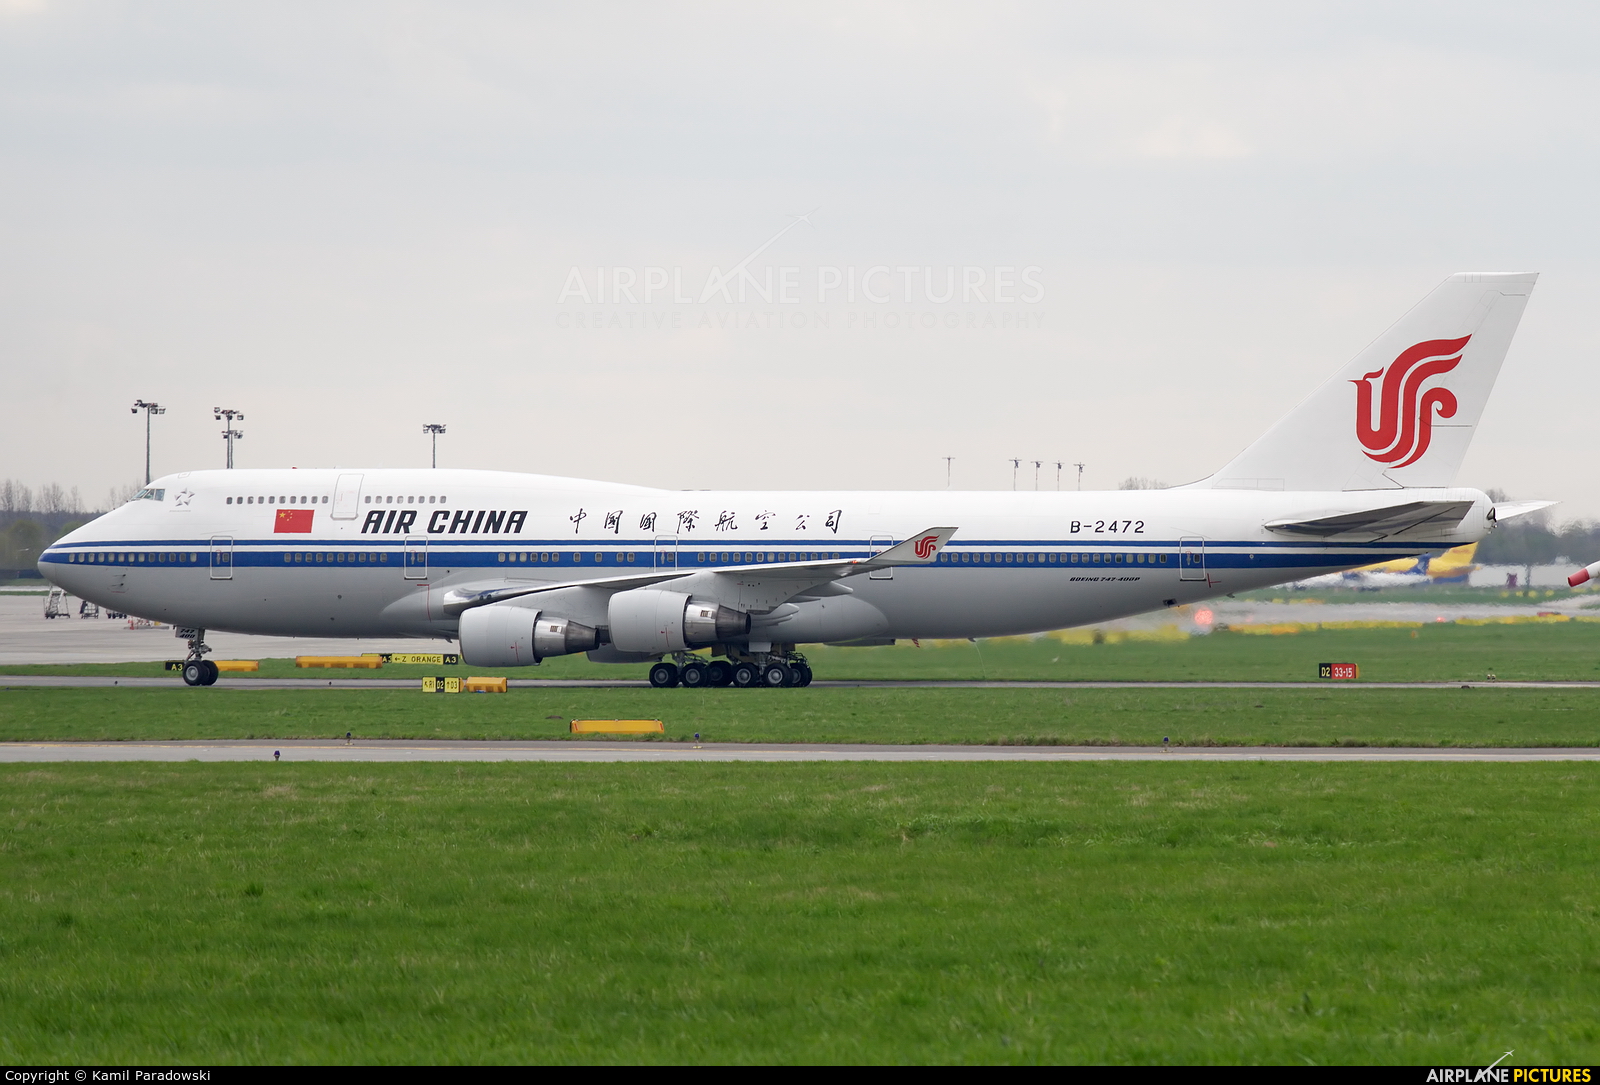 Air China B-2472 aircraft at Warsaw - Frederic Chopin